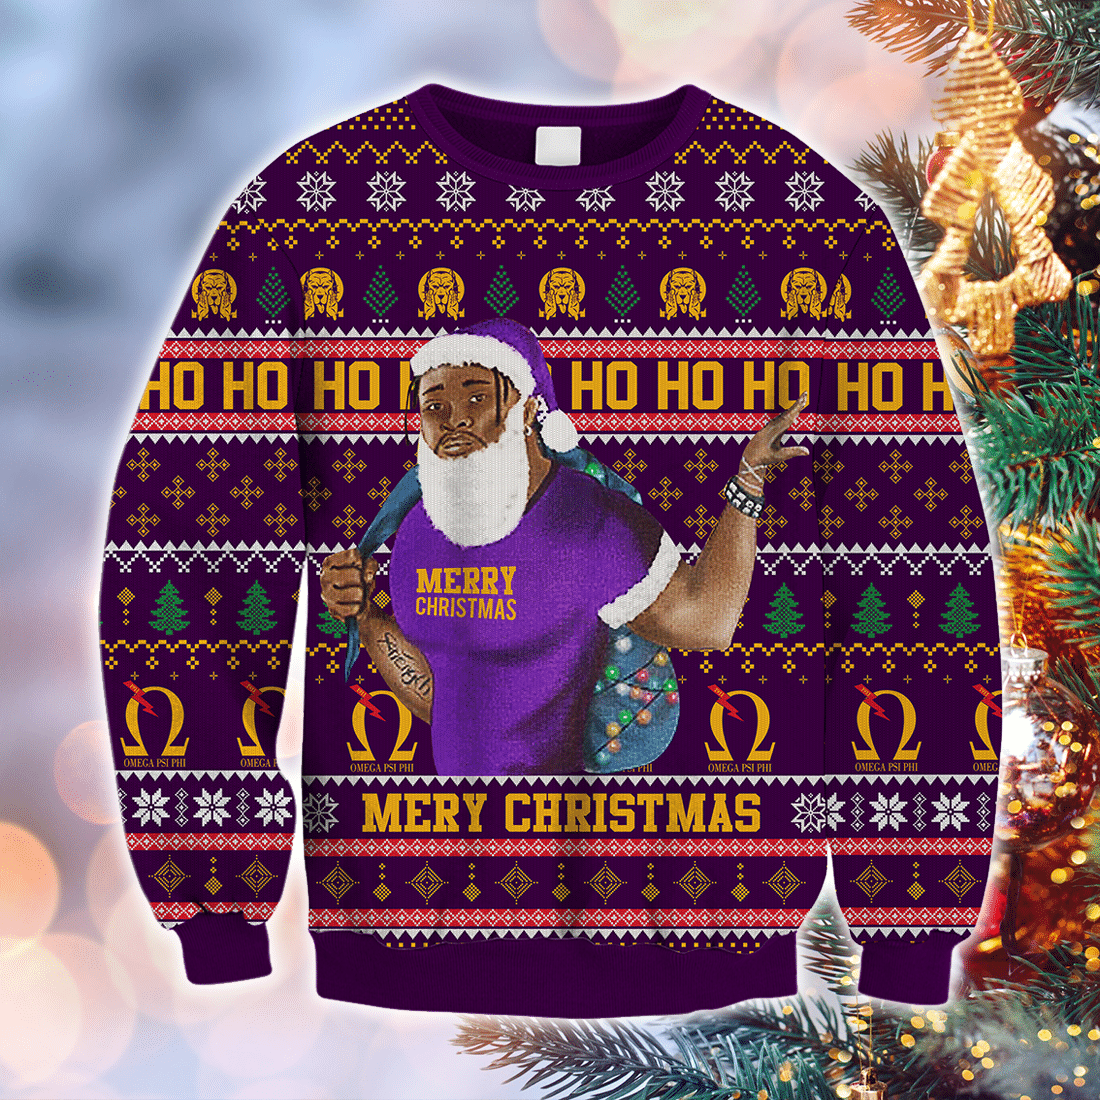 Fraternity Sweatshirt - Lux Man Hohoho Christmas Omega Psi Phi Crewneck Sweatshirt